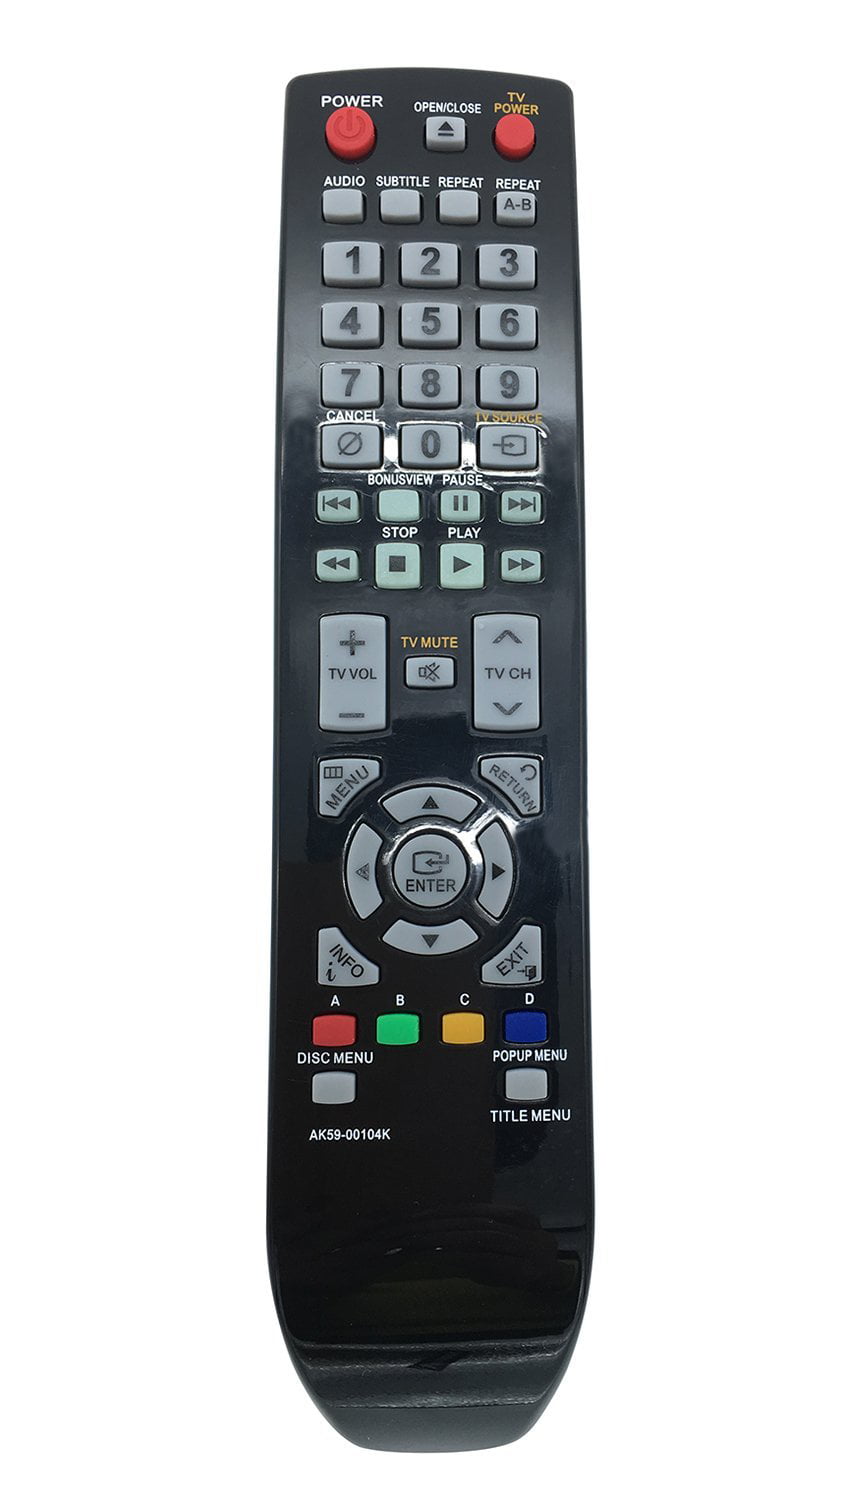 New Blu Ray Dvd Player Remote Control Ak59 k For Samsung Blu Ray Dvd Player Work For p1590 p1600 P1600 Xaa p Walmart Com Walmart Com